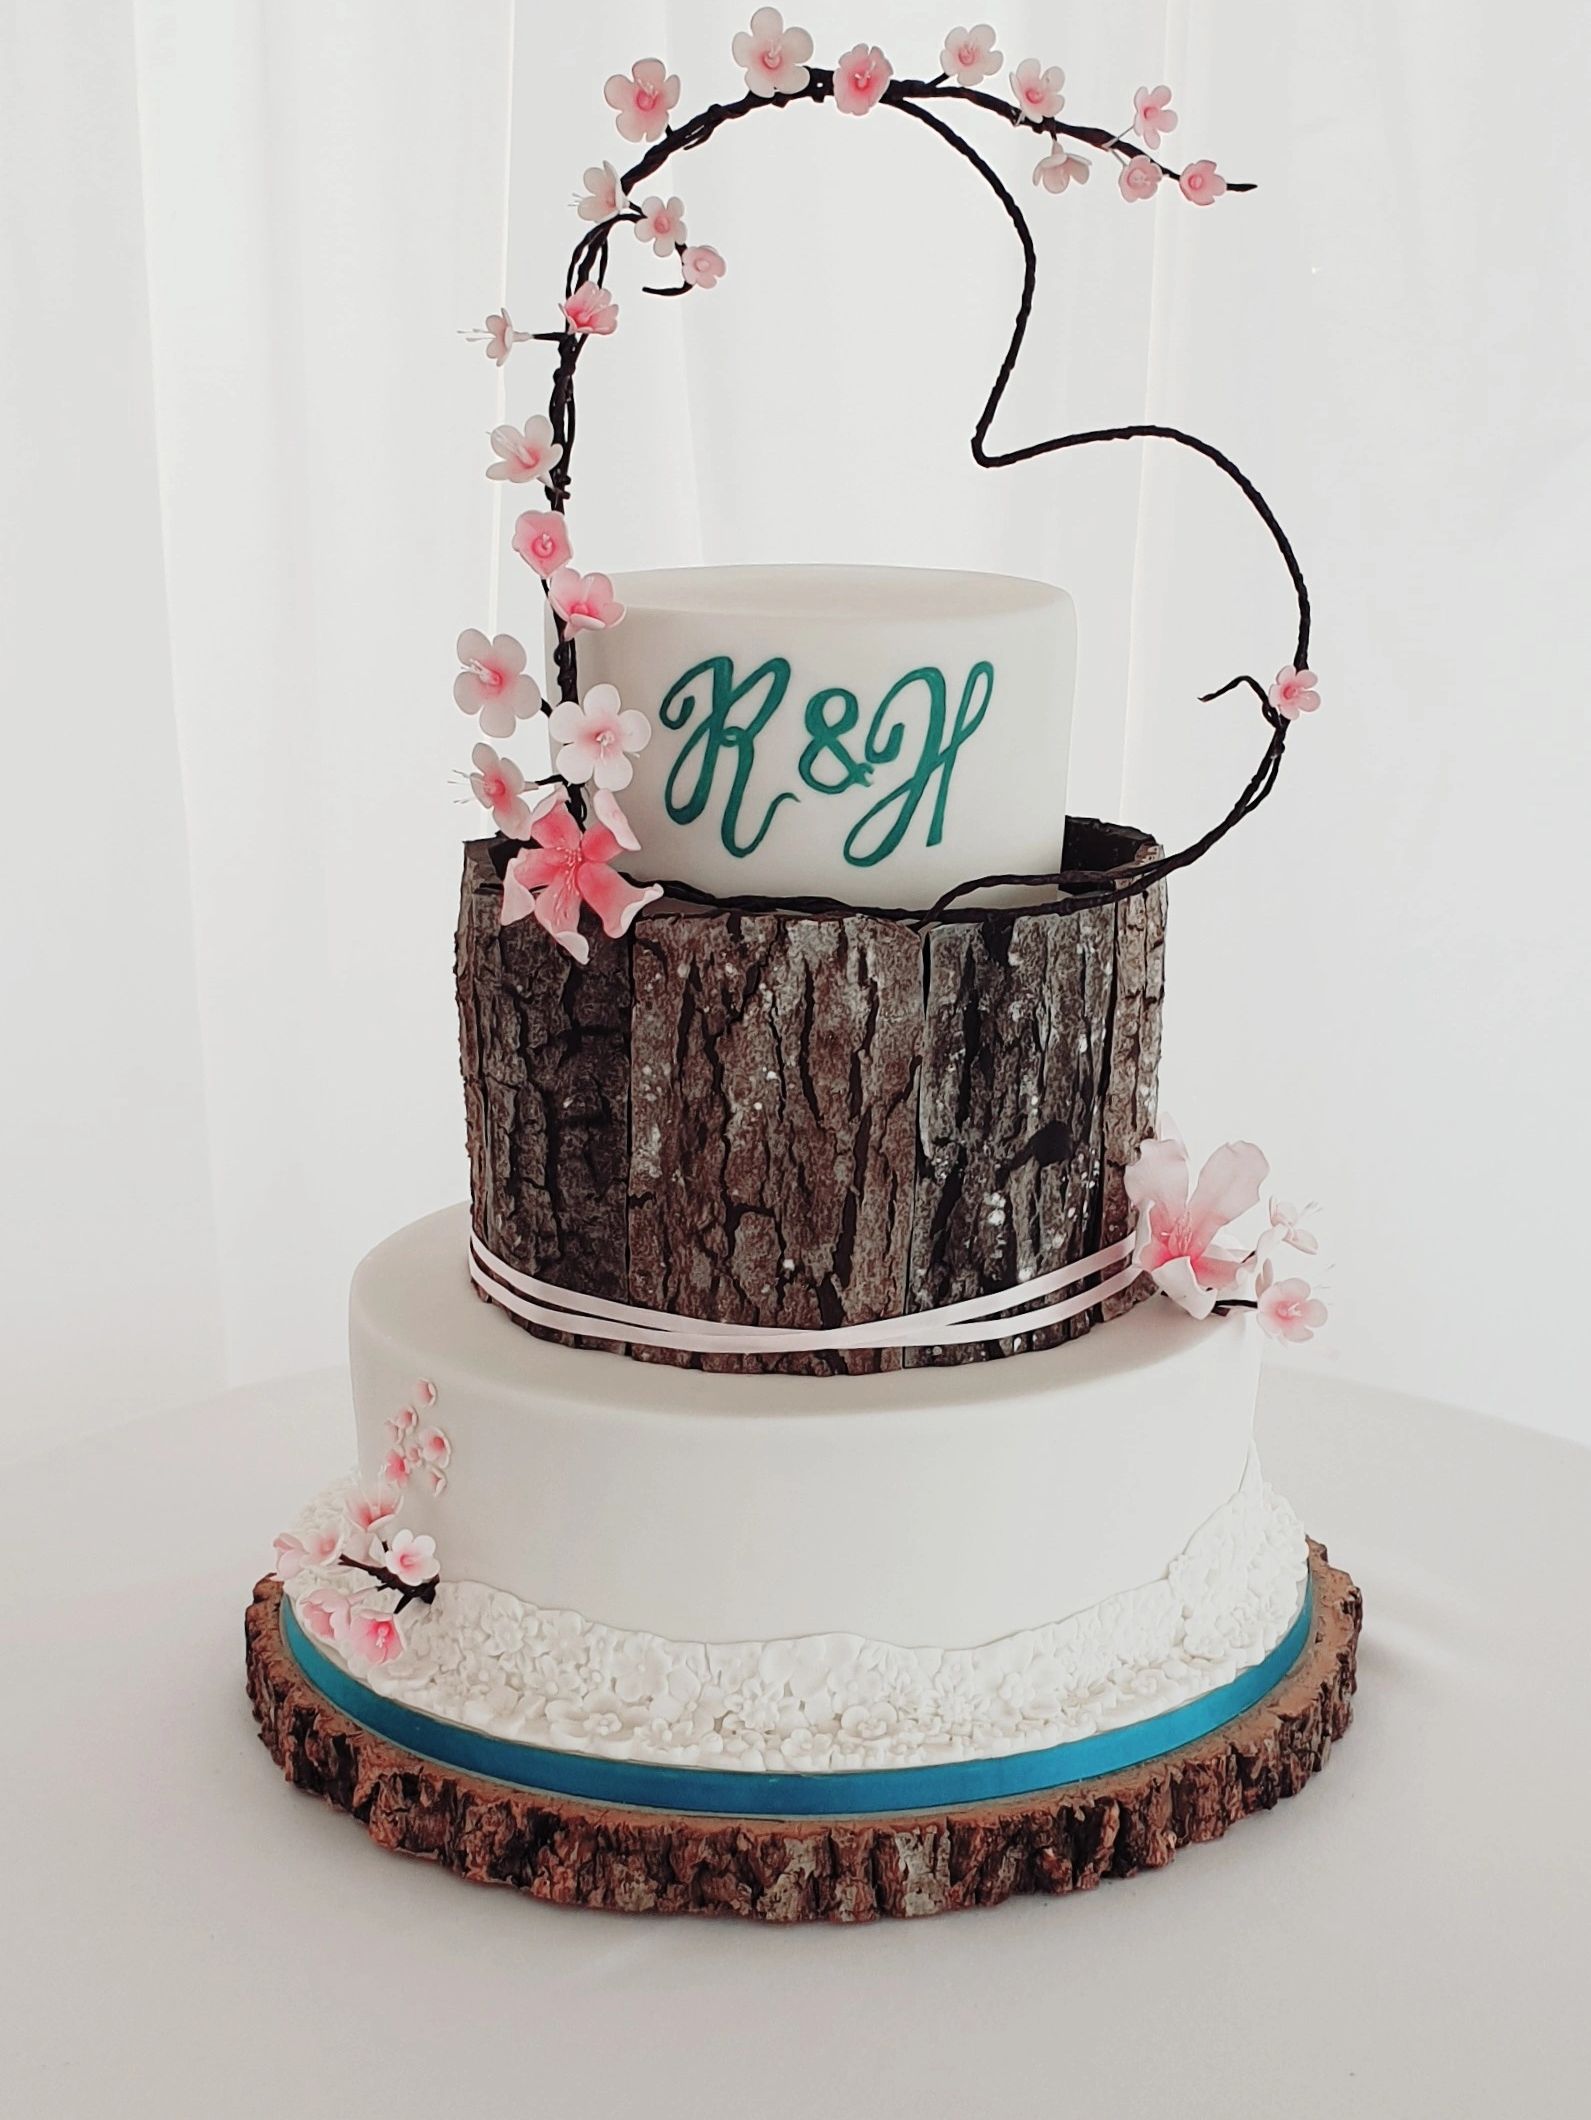 3 tier cherry blossom and bark cake